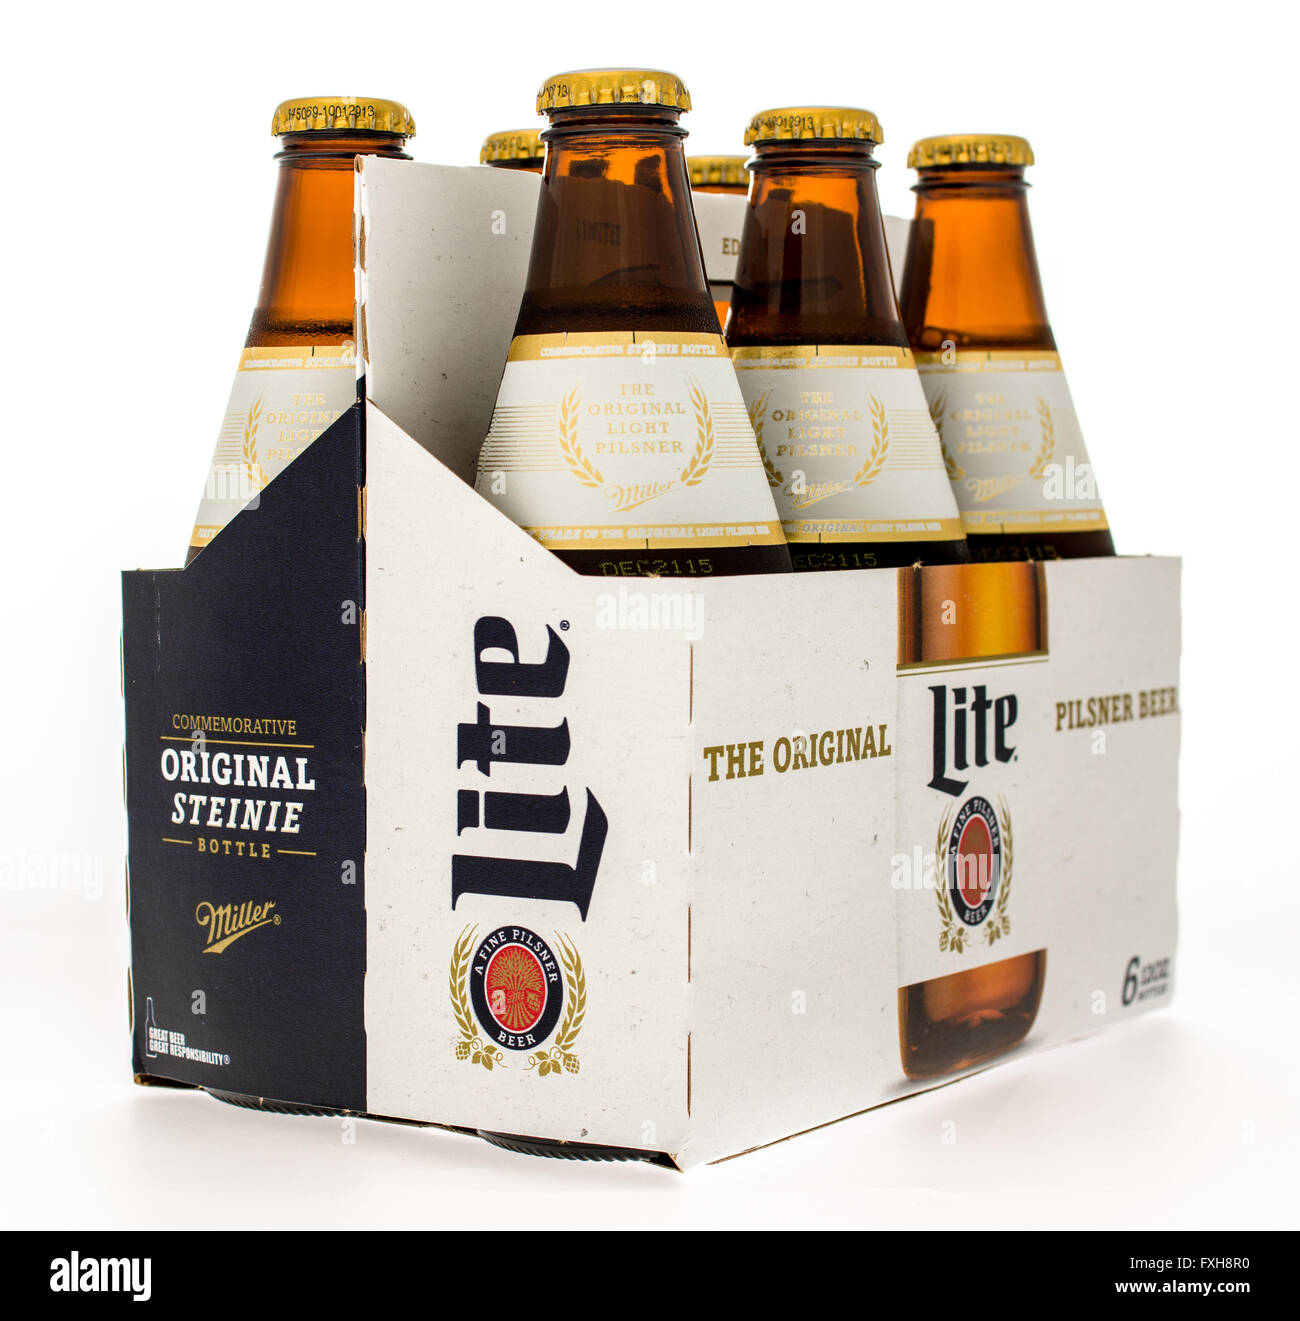 Winneconne, Wisconsin -14 Okt. 2015: Six-Pack von Miller Lite Bier in neuem Design. Stockfoto